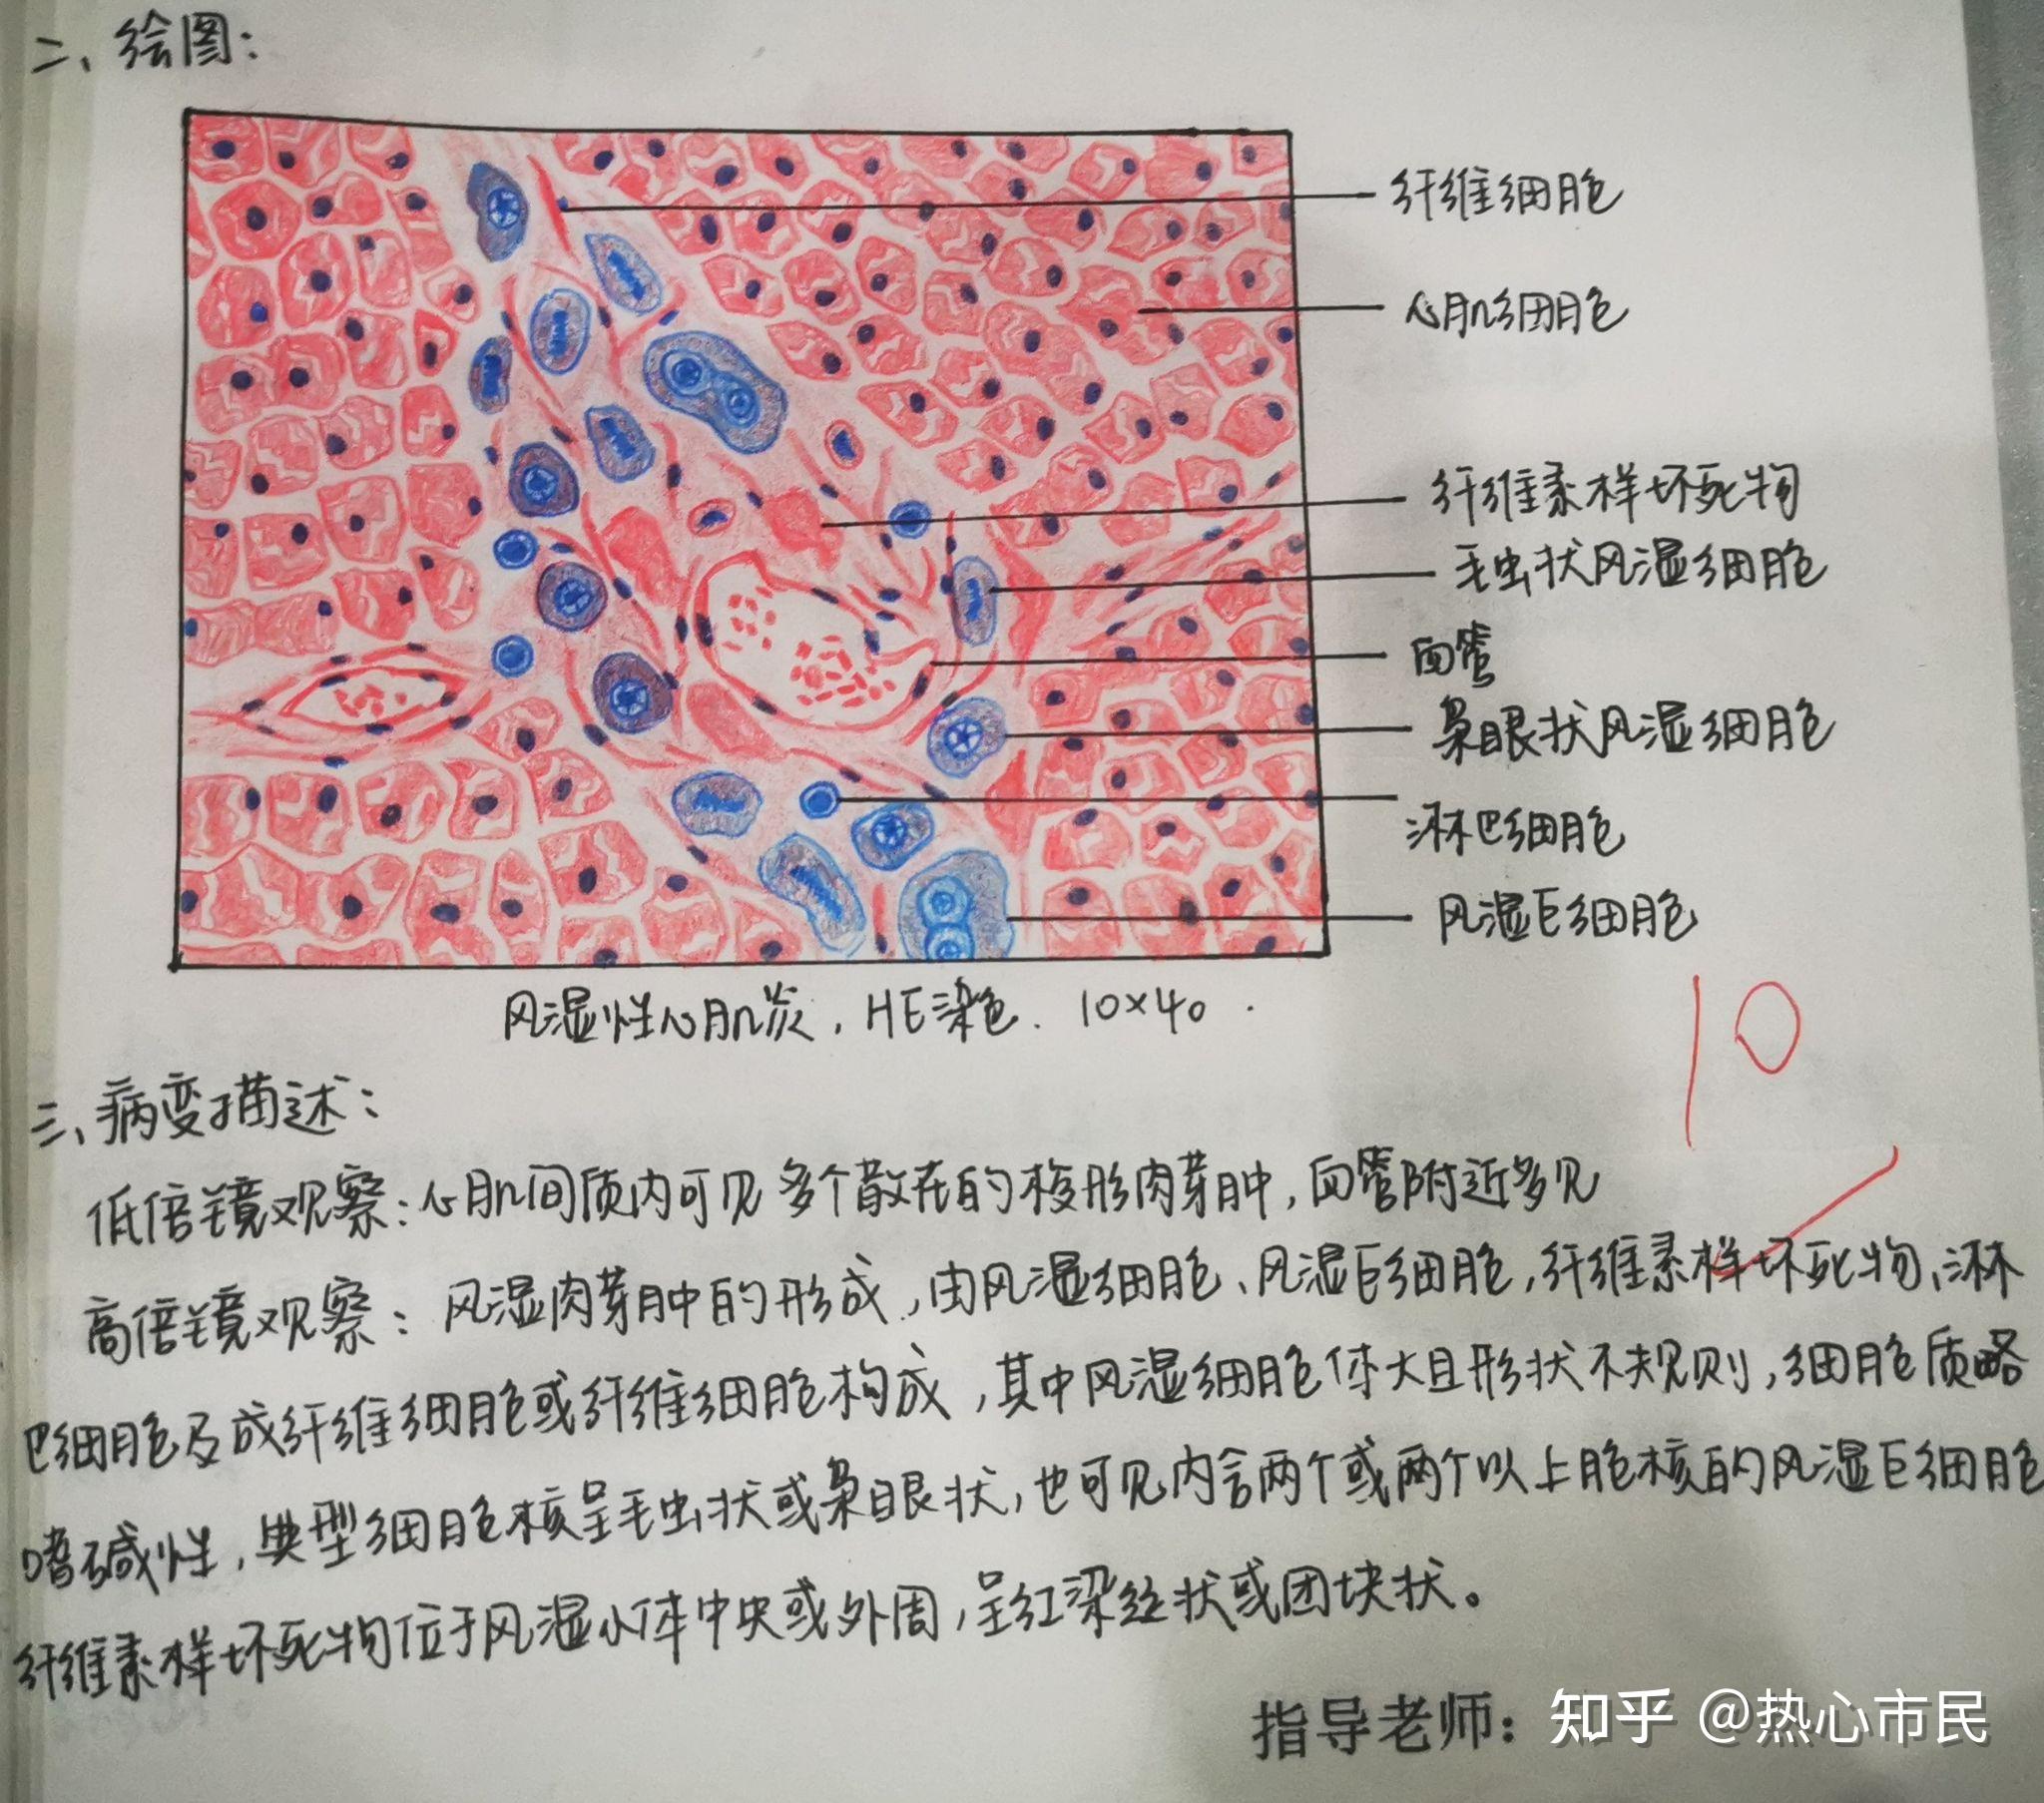 肺淤血切片图手绘图图片